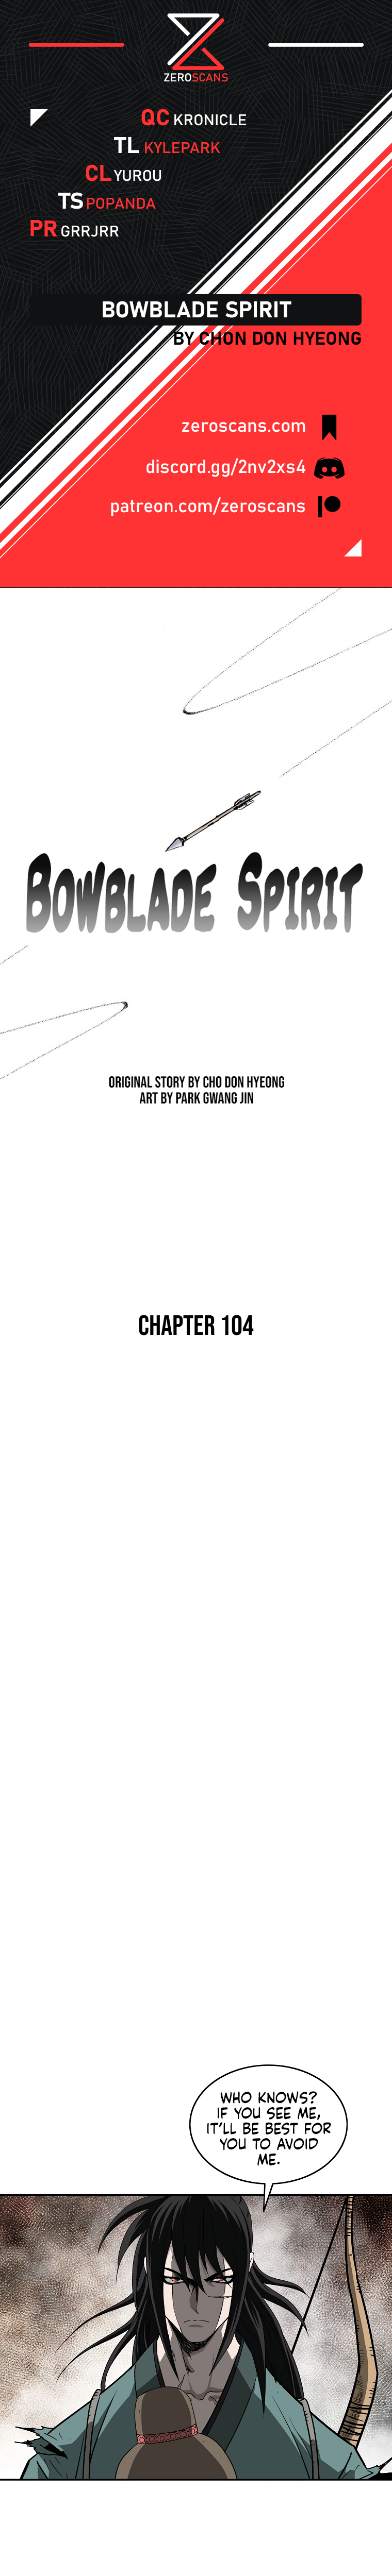 Bowblade Spirit - Chapter 10841 - Image 1